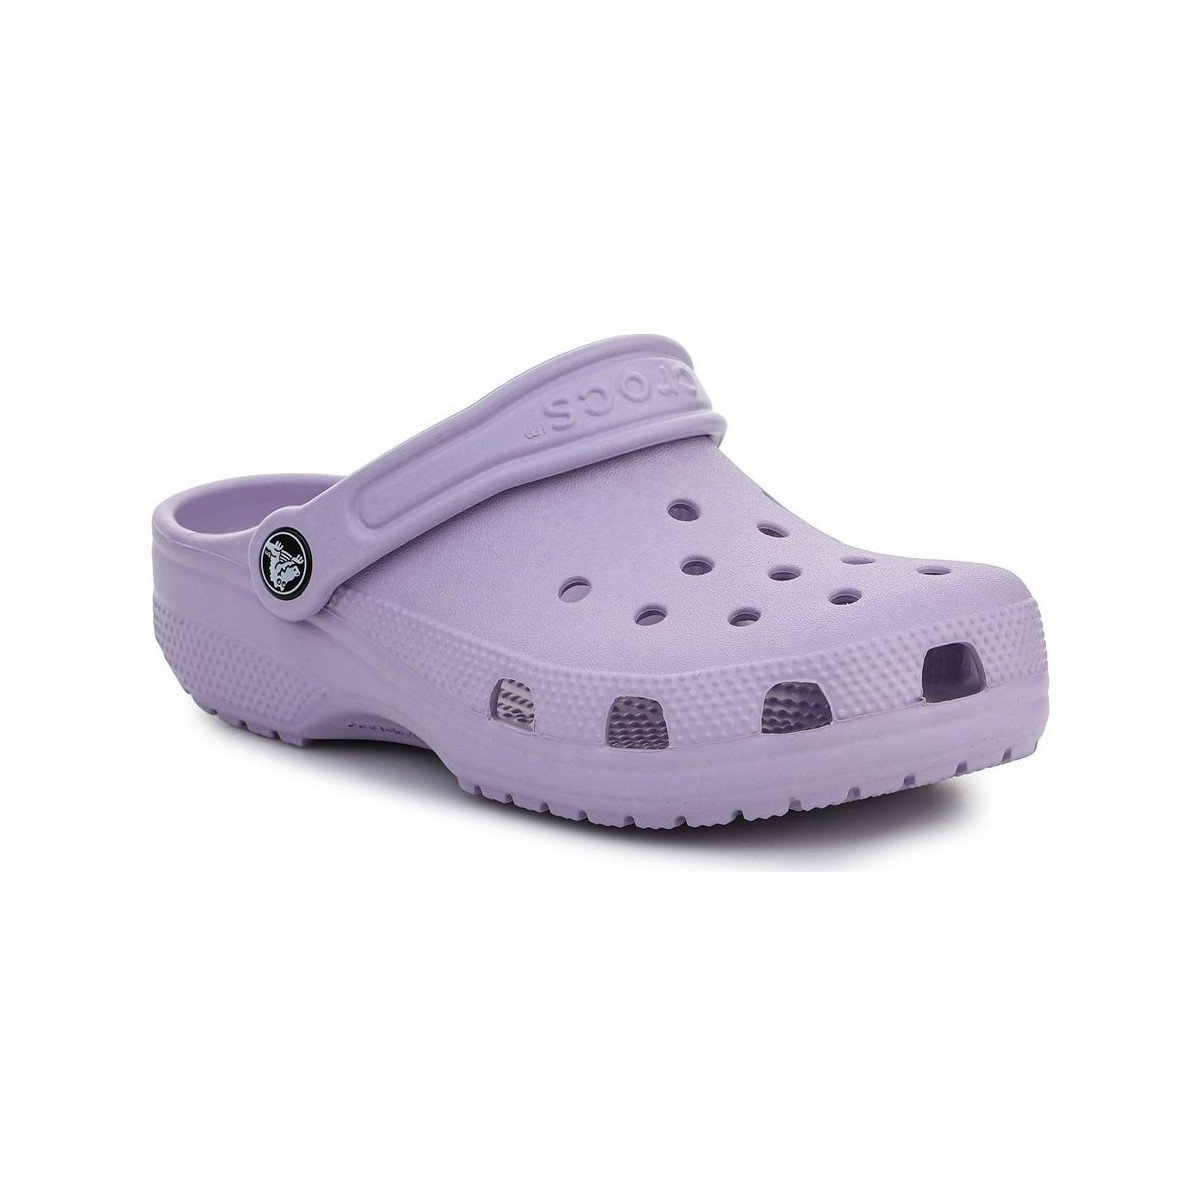 Skor Barn Snörskor & Lågskor Crocs Classic Clog Violett